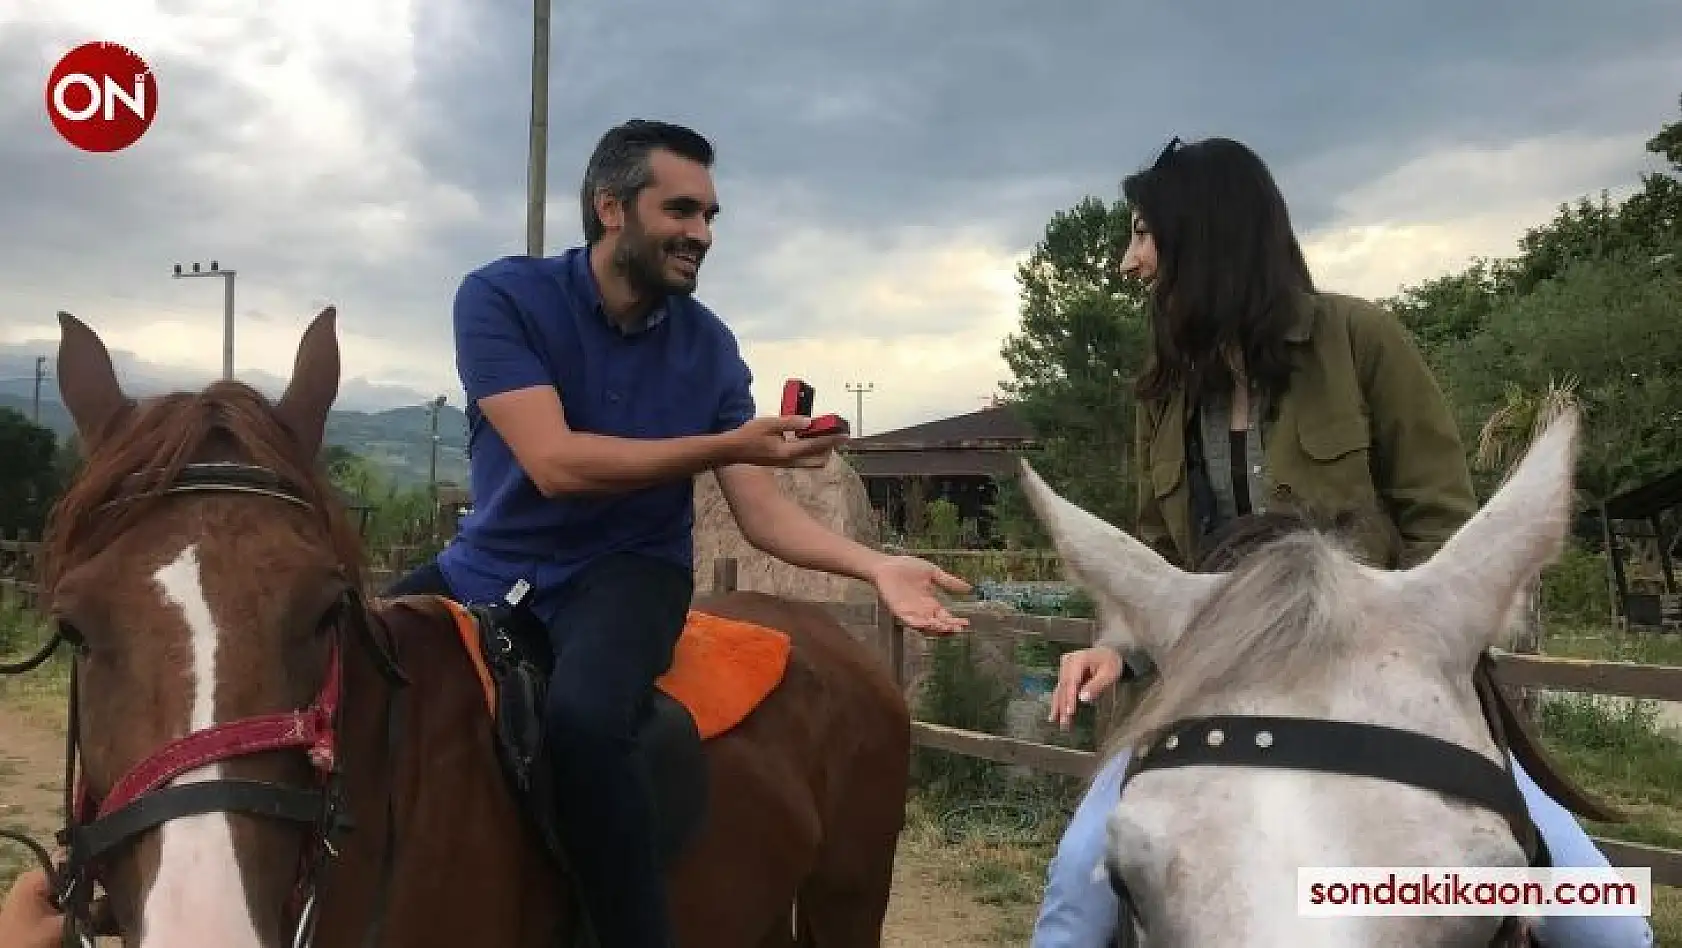 At üzerinde evlilik teklifi